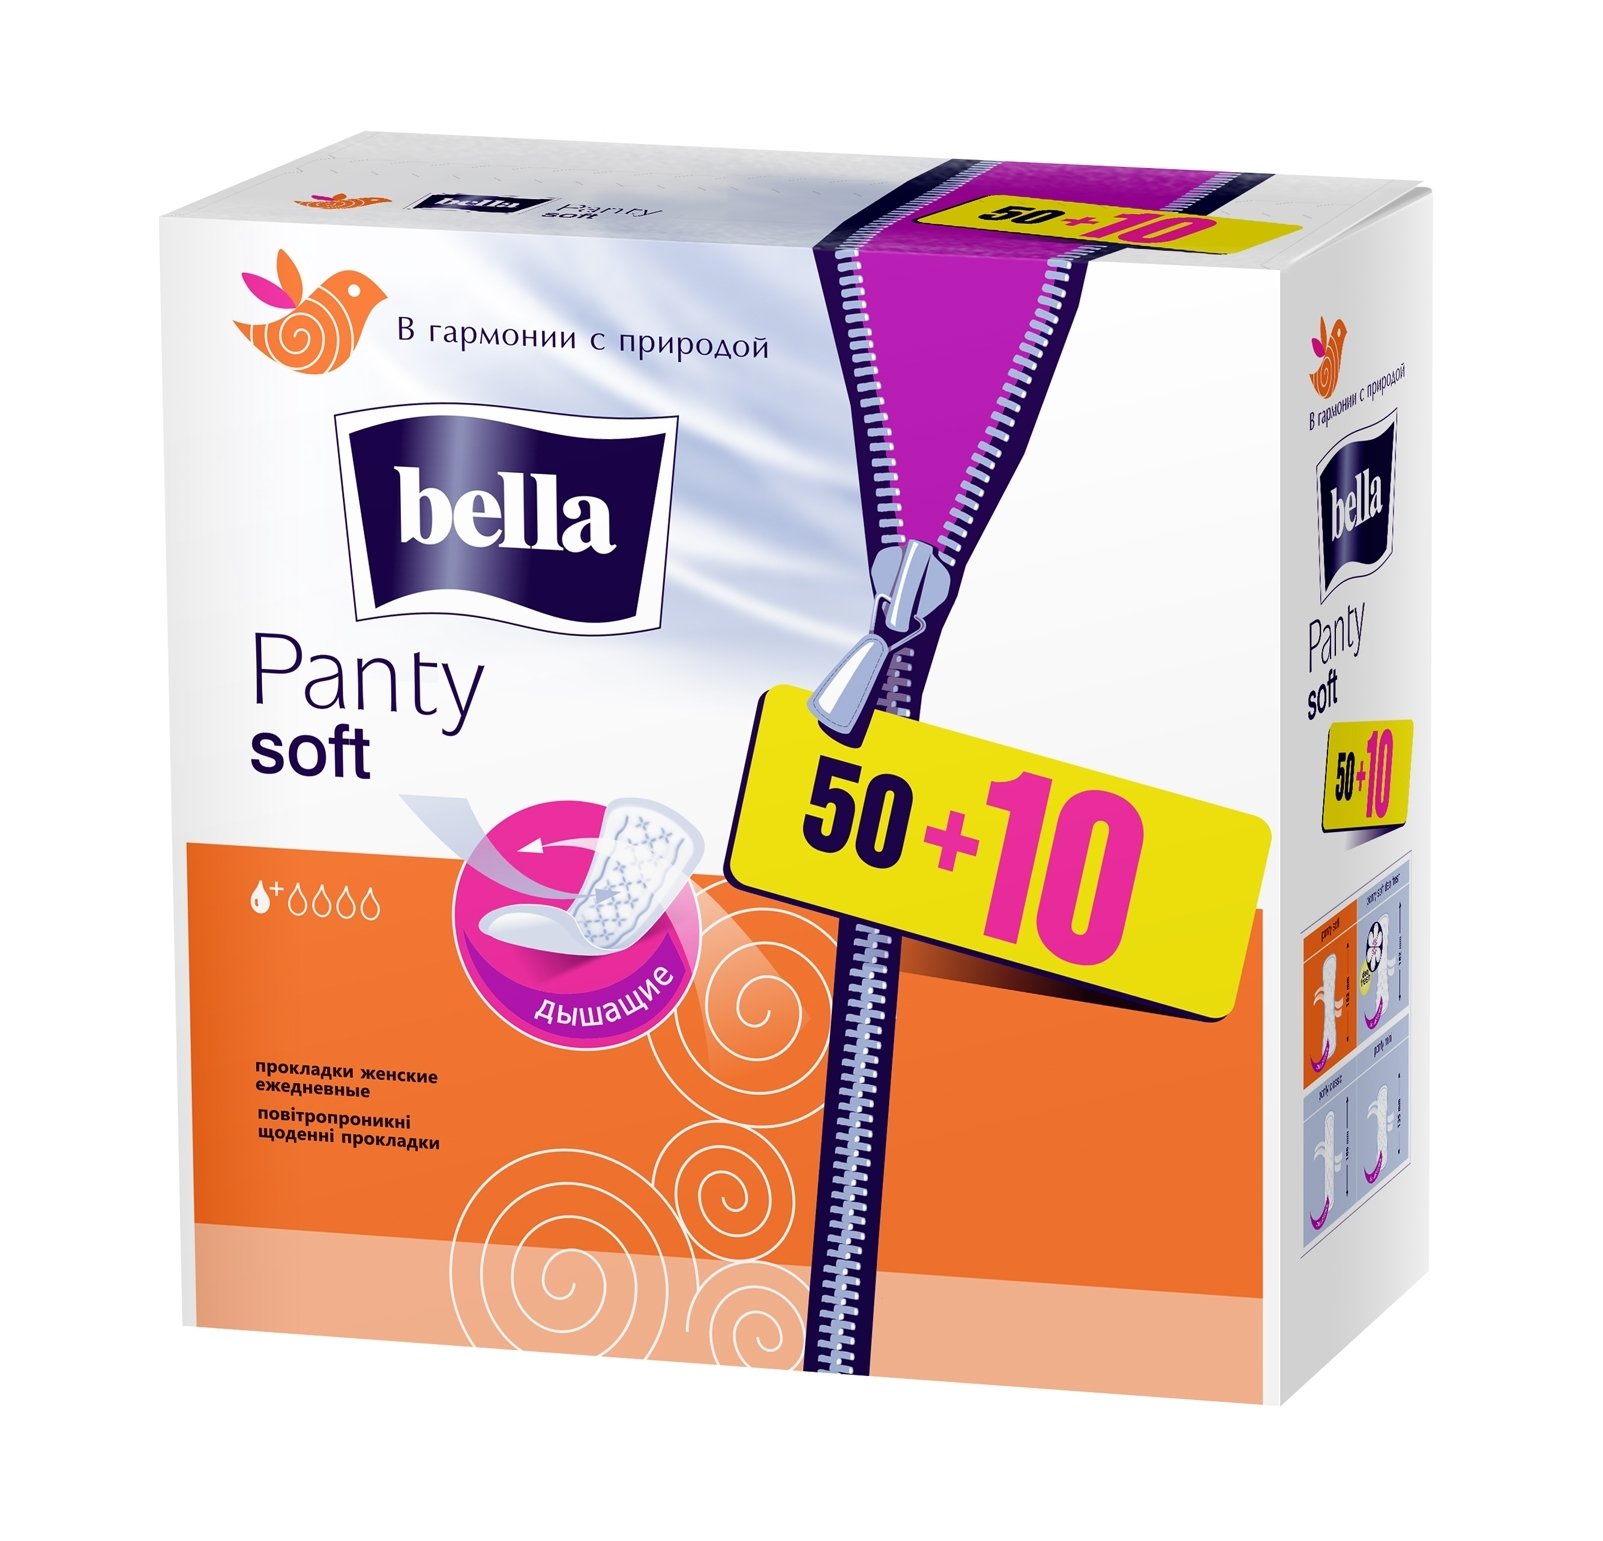 Щоденні прокладки Bella Panty Soft 50+10 шт. - фото 2